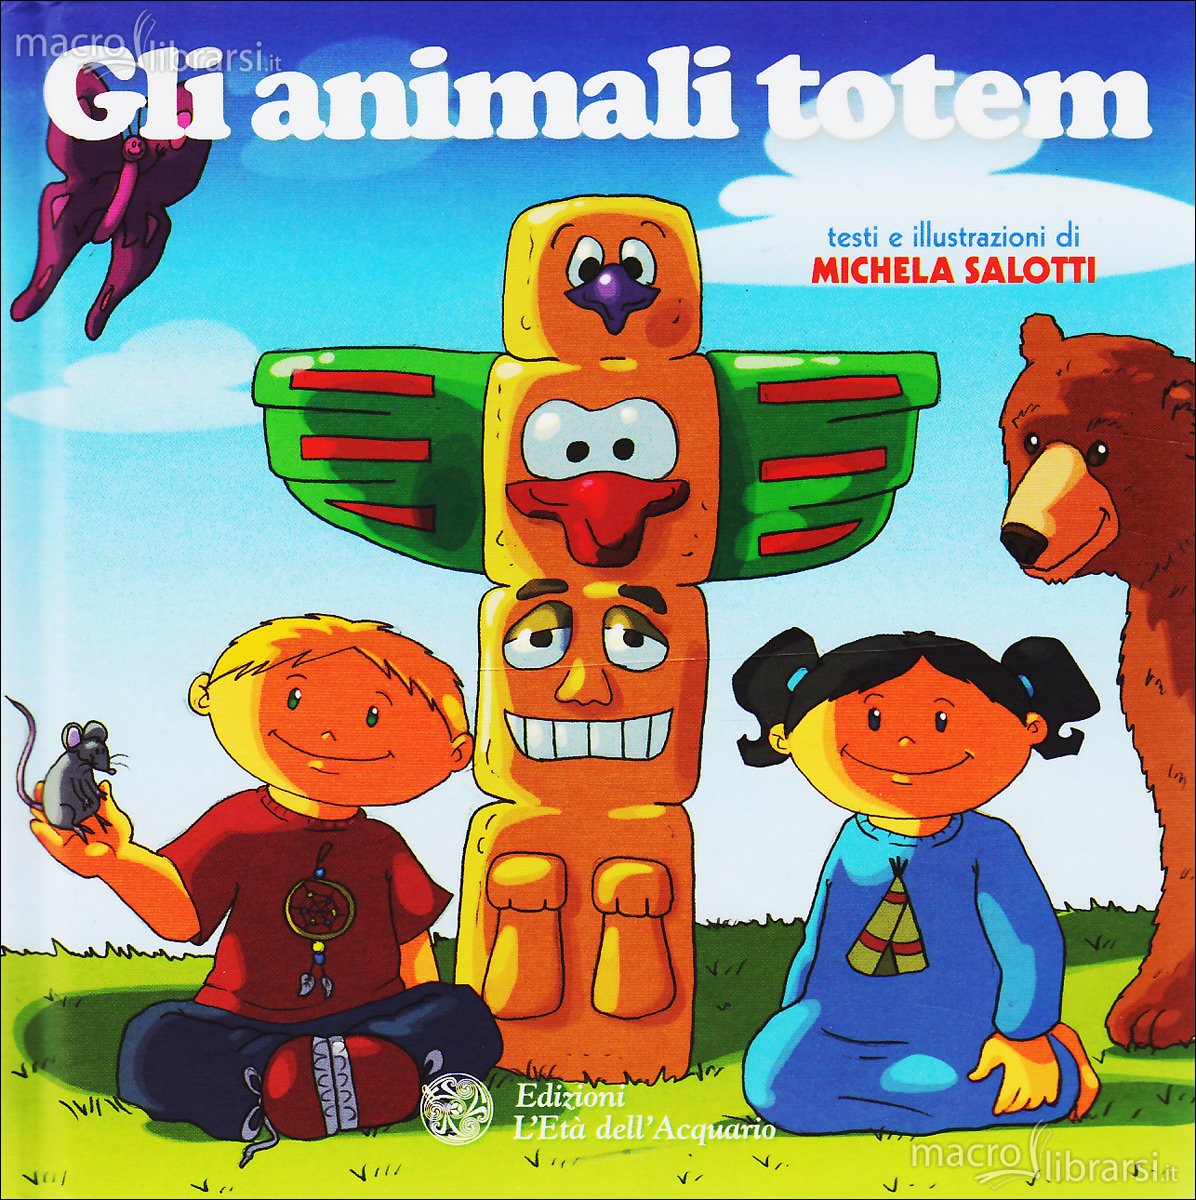 Gli animali totem - Michela Salotti (illustrazioni)